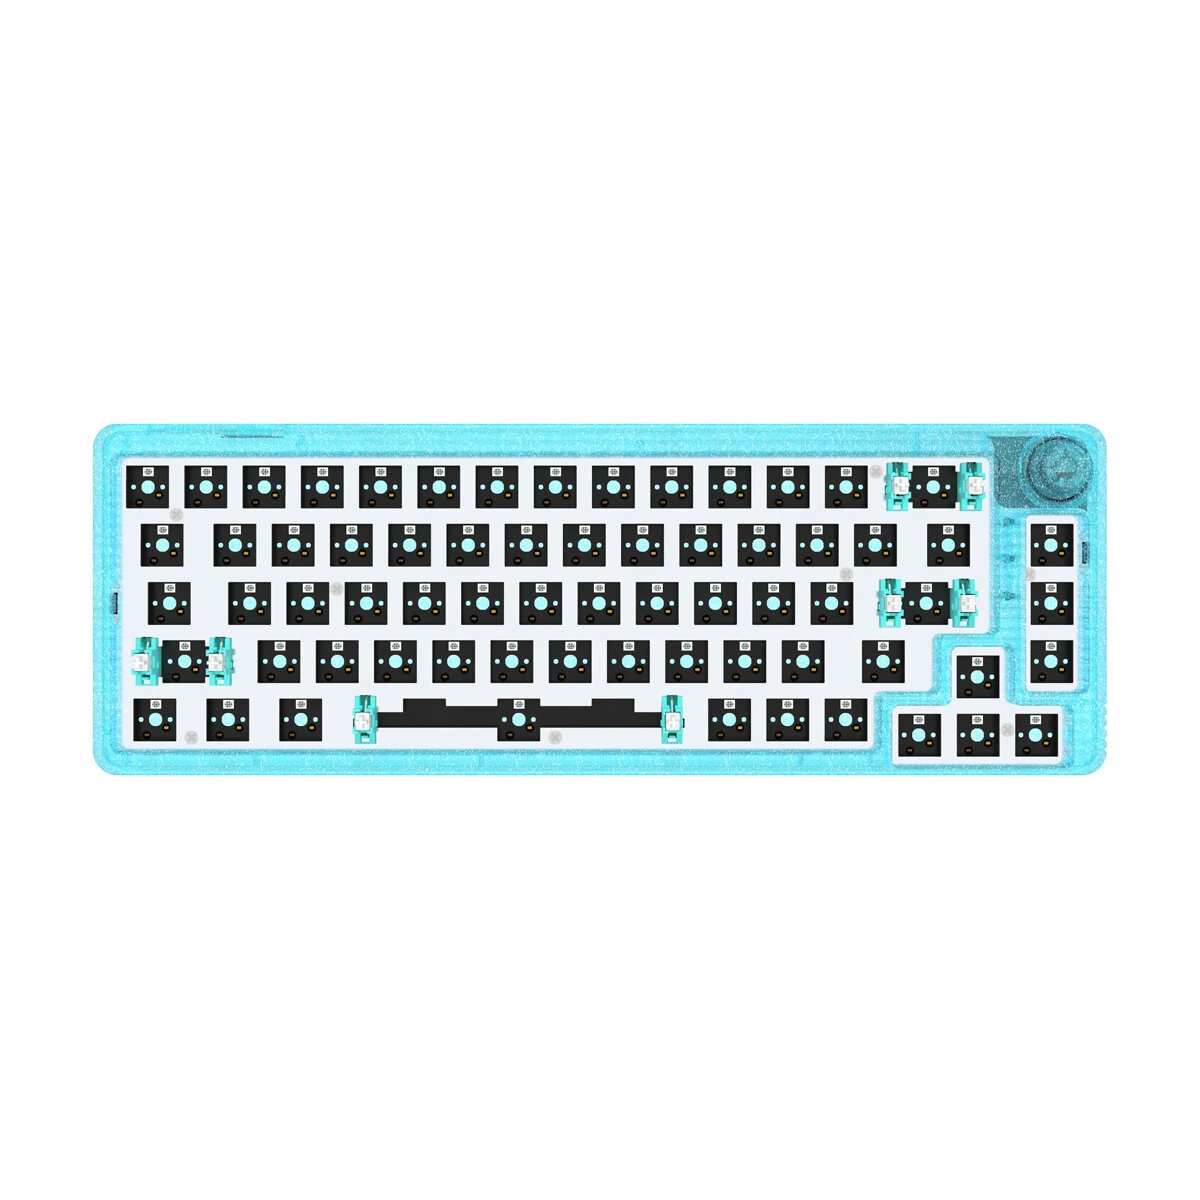 GamaKay LK67 Keyboard Banggood Coupon Promo Code (PL Warehouse)